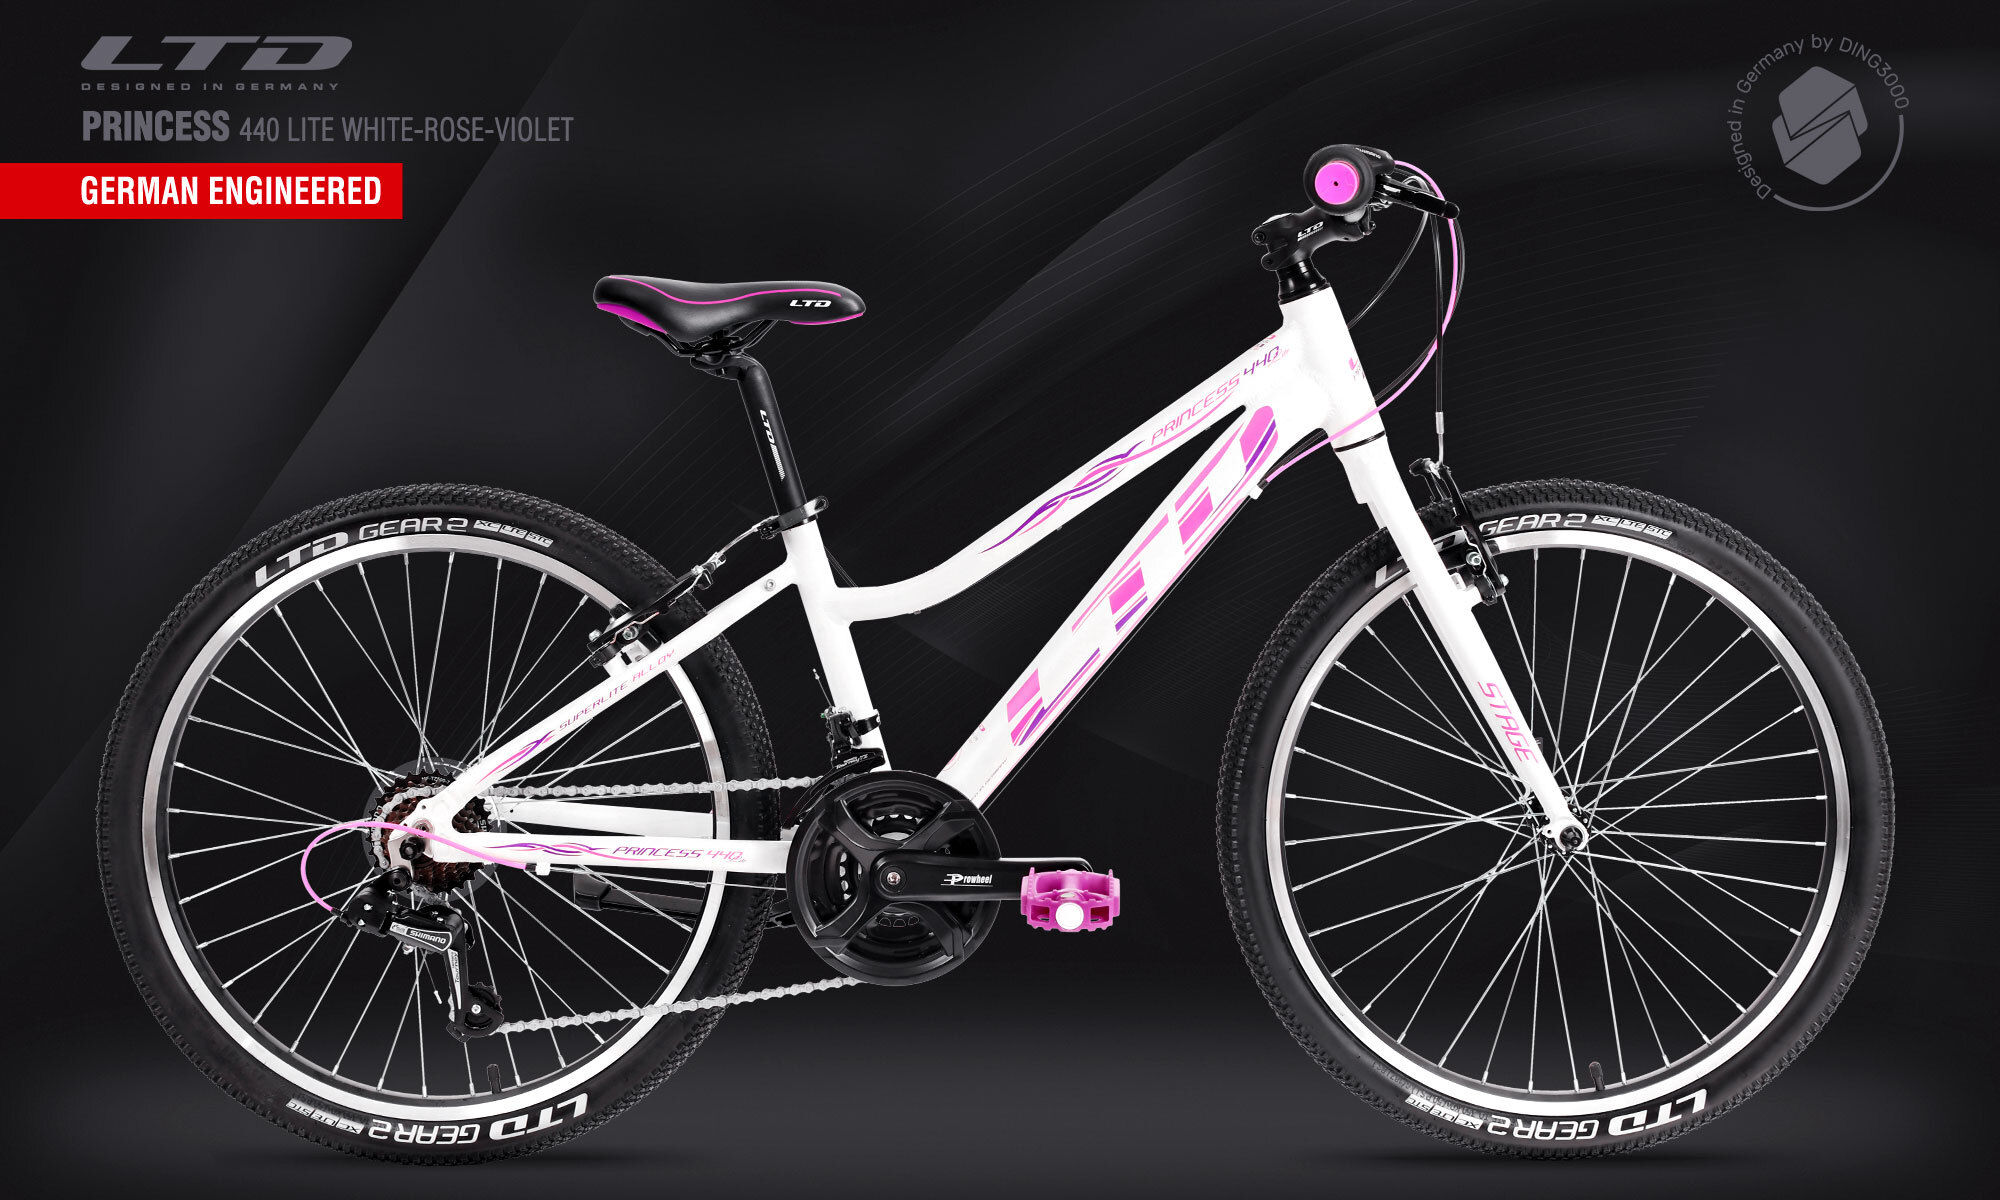 Ltd велосипеды купить. Ltd Princess 2021. Велосипед Ltd Bandit. Ltd 2022 велосипед. Велосипед Ltd Rebel 730.